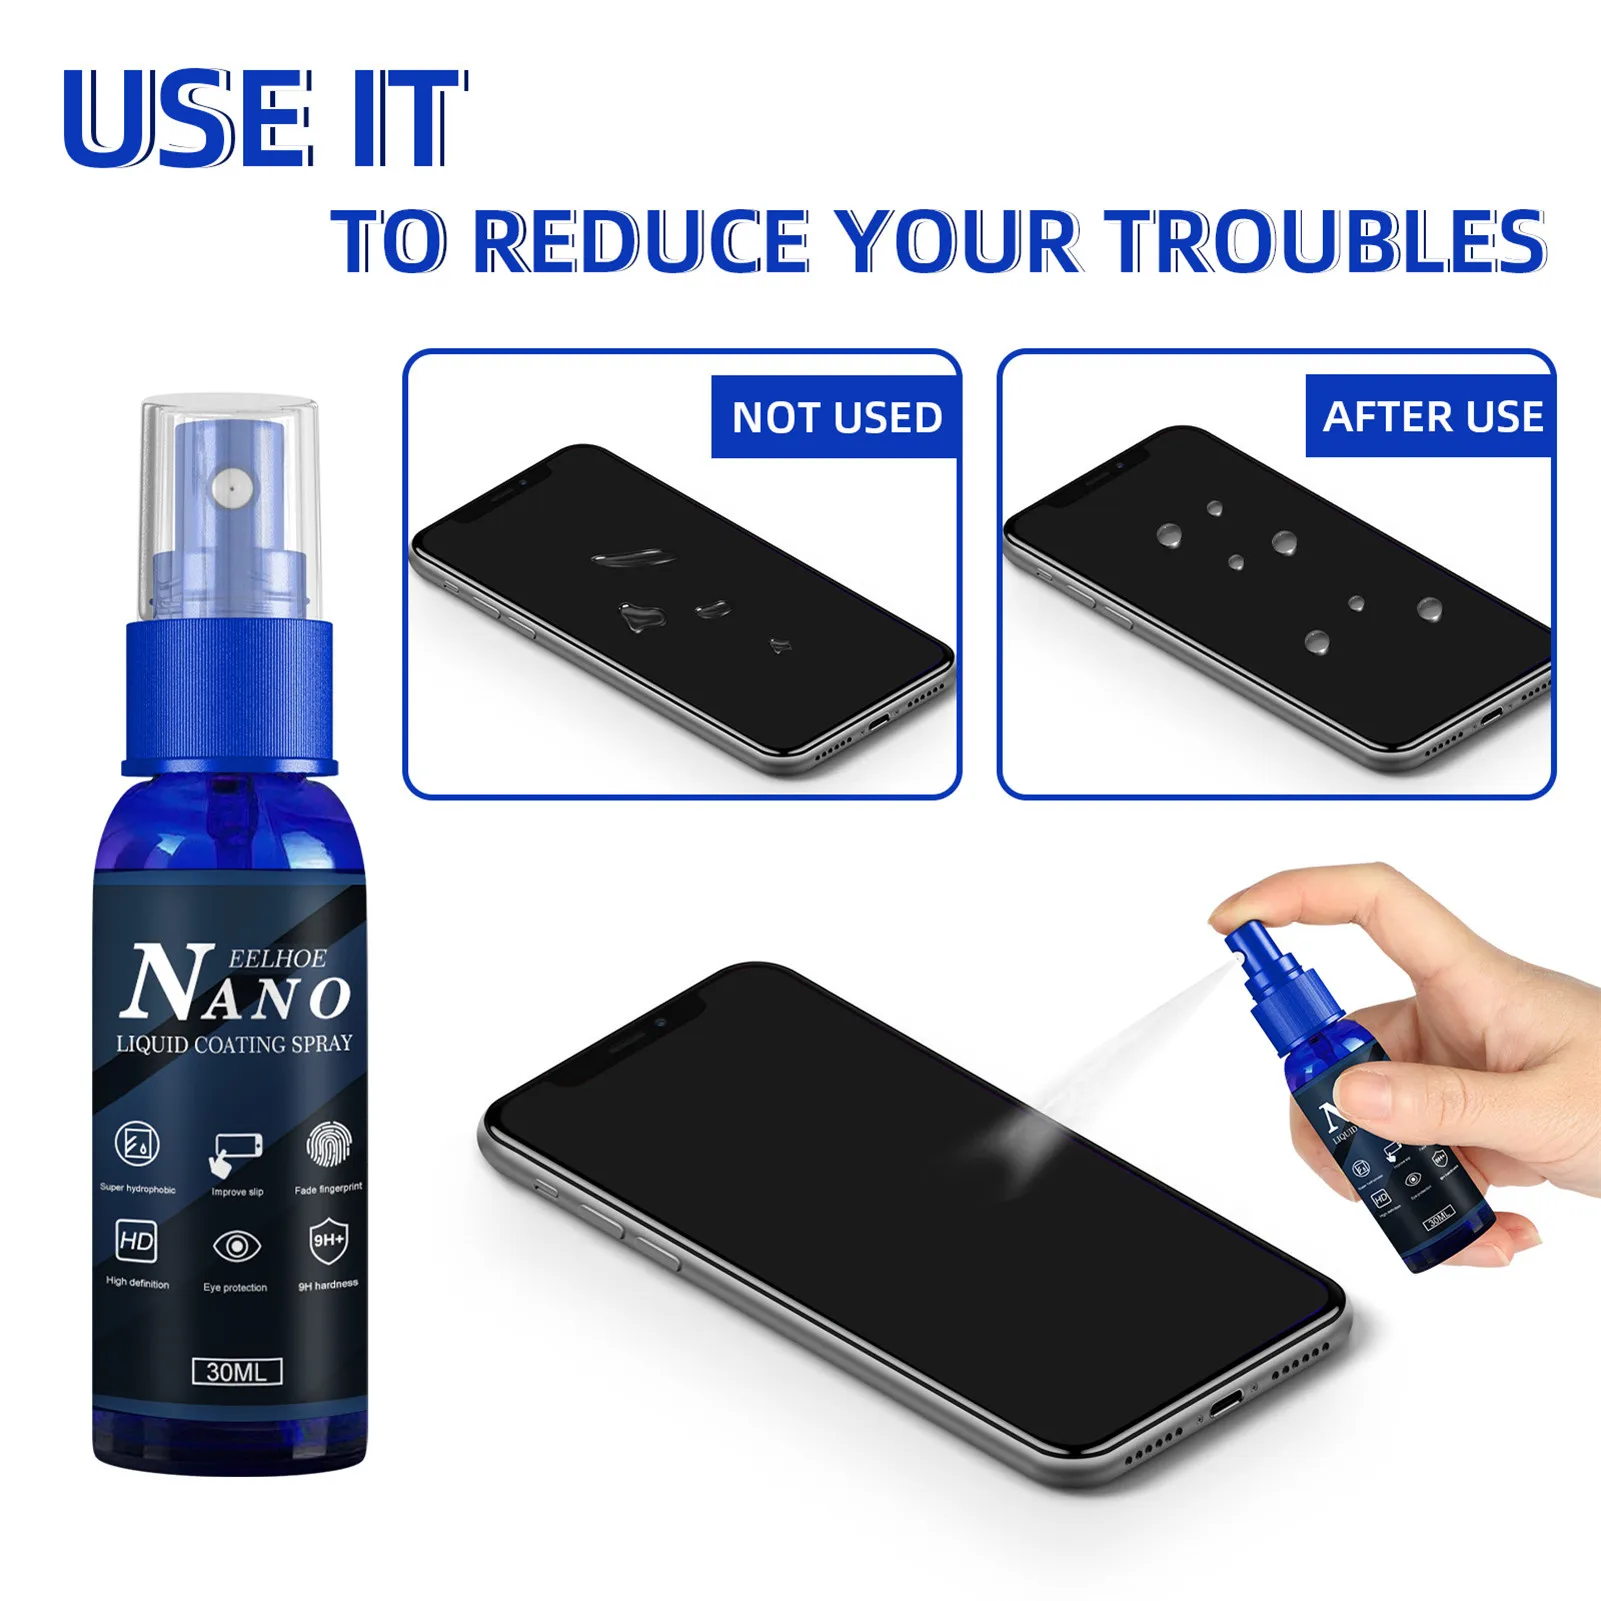 

Nano жидкий экран протектор 30 мл мобильный телефон покрытие решение для защиты от отпечатков пальцев телефона очиститель экрана спрей Стекло Очиститель